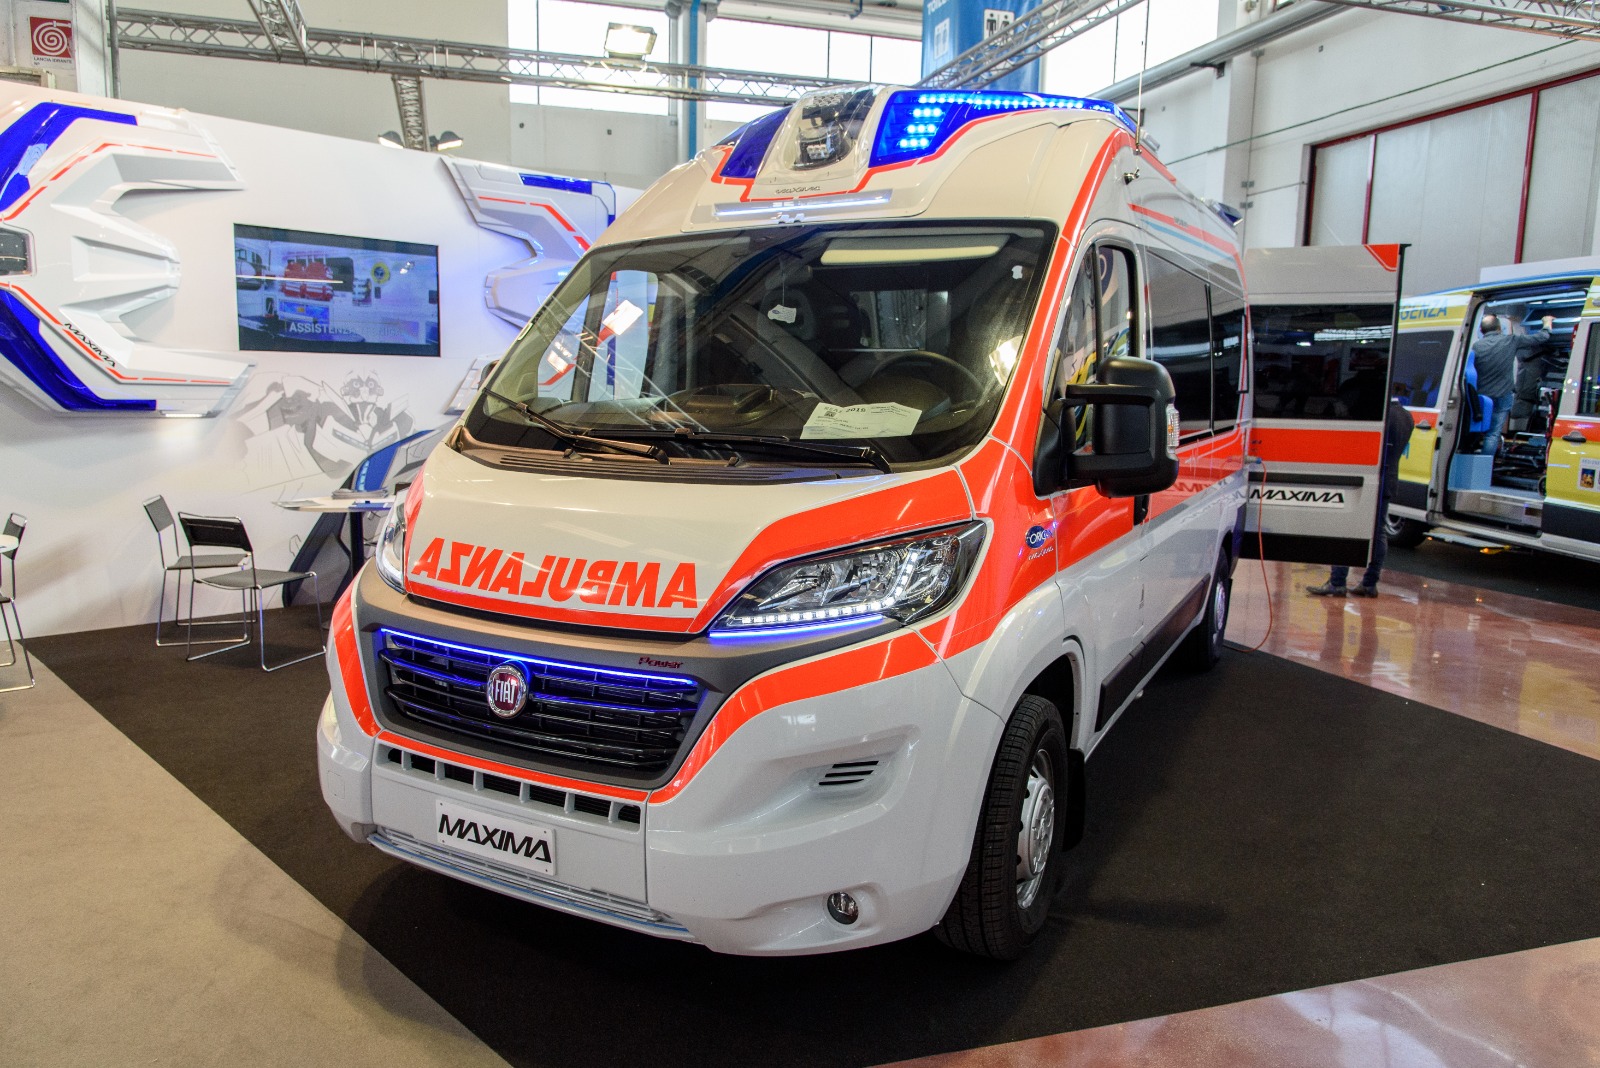 Ambulanza del futuro: Orion presenta MAXIMA, una rivoluzione di spazio e stile | Emergency Live 2